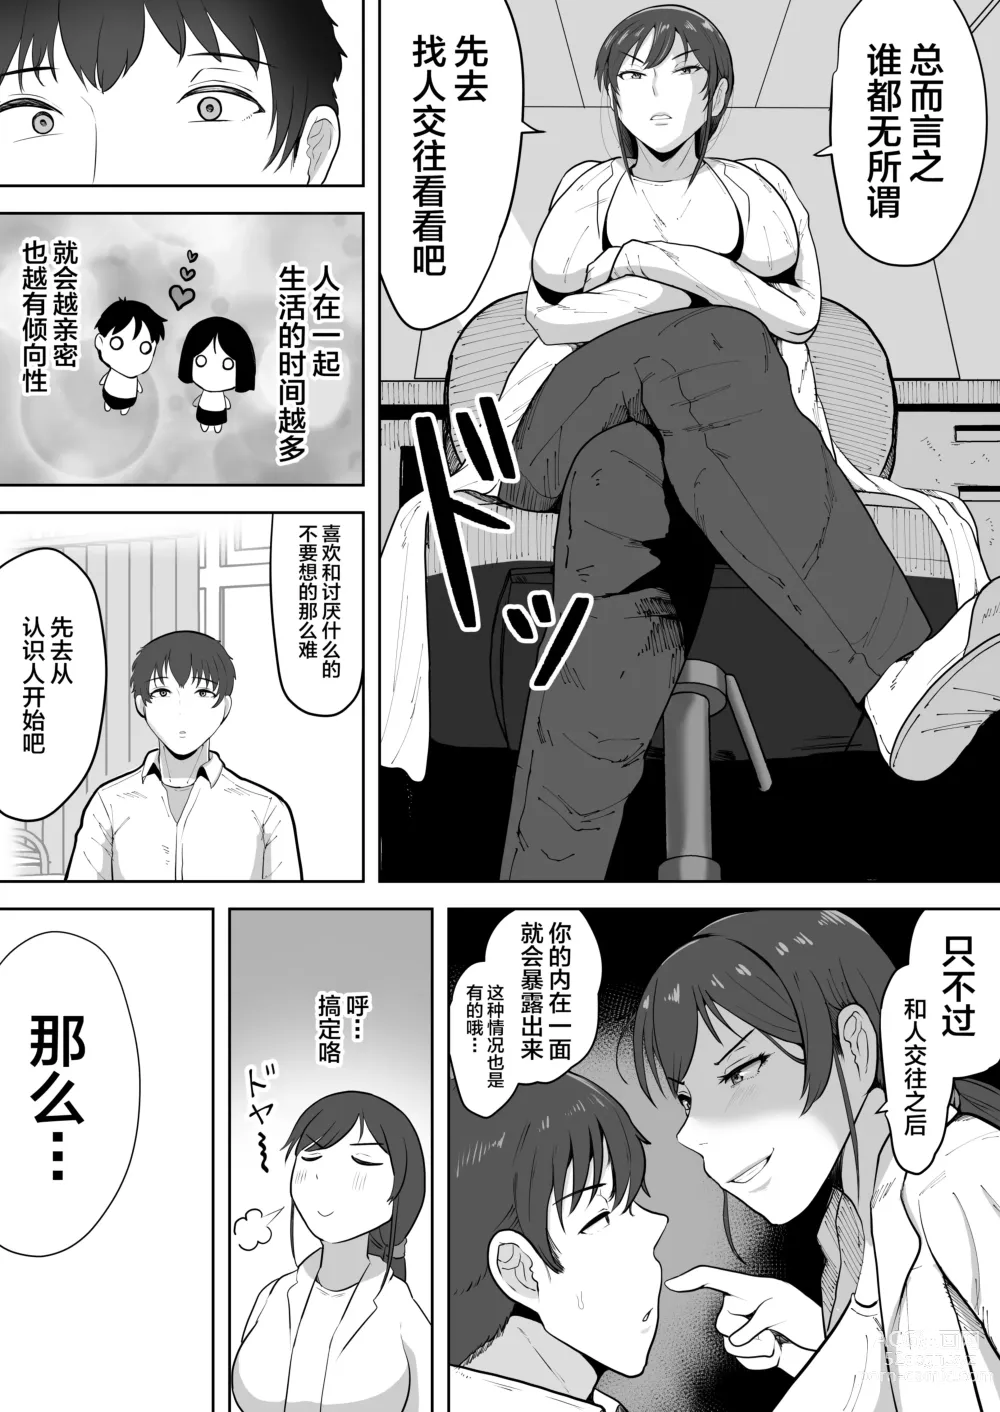 Page 6 of doujinshi Hoken no Sensei Shinobu 37-sai